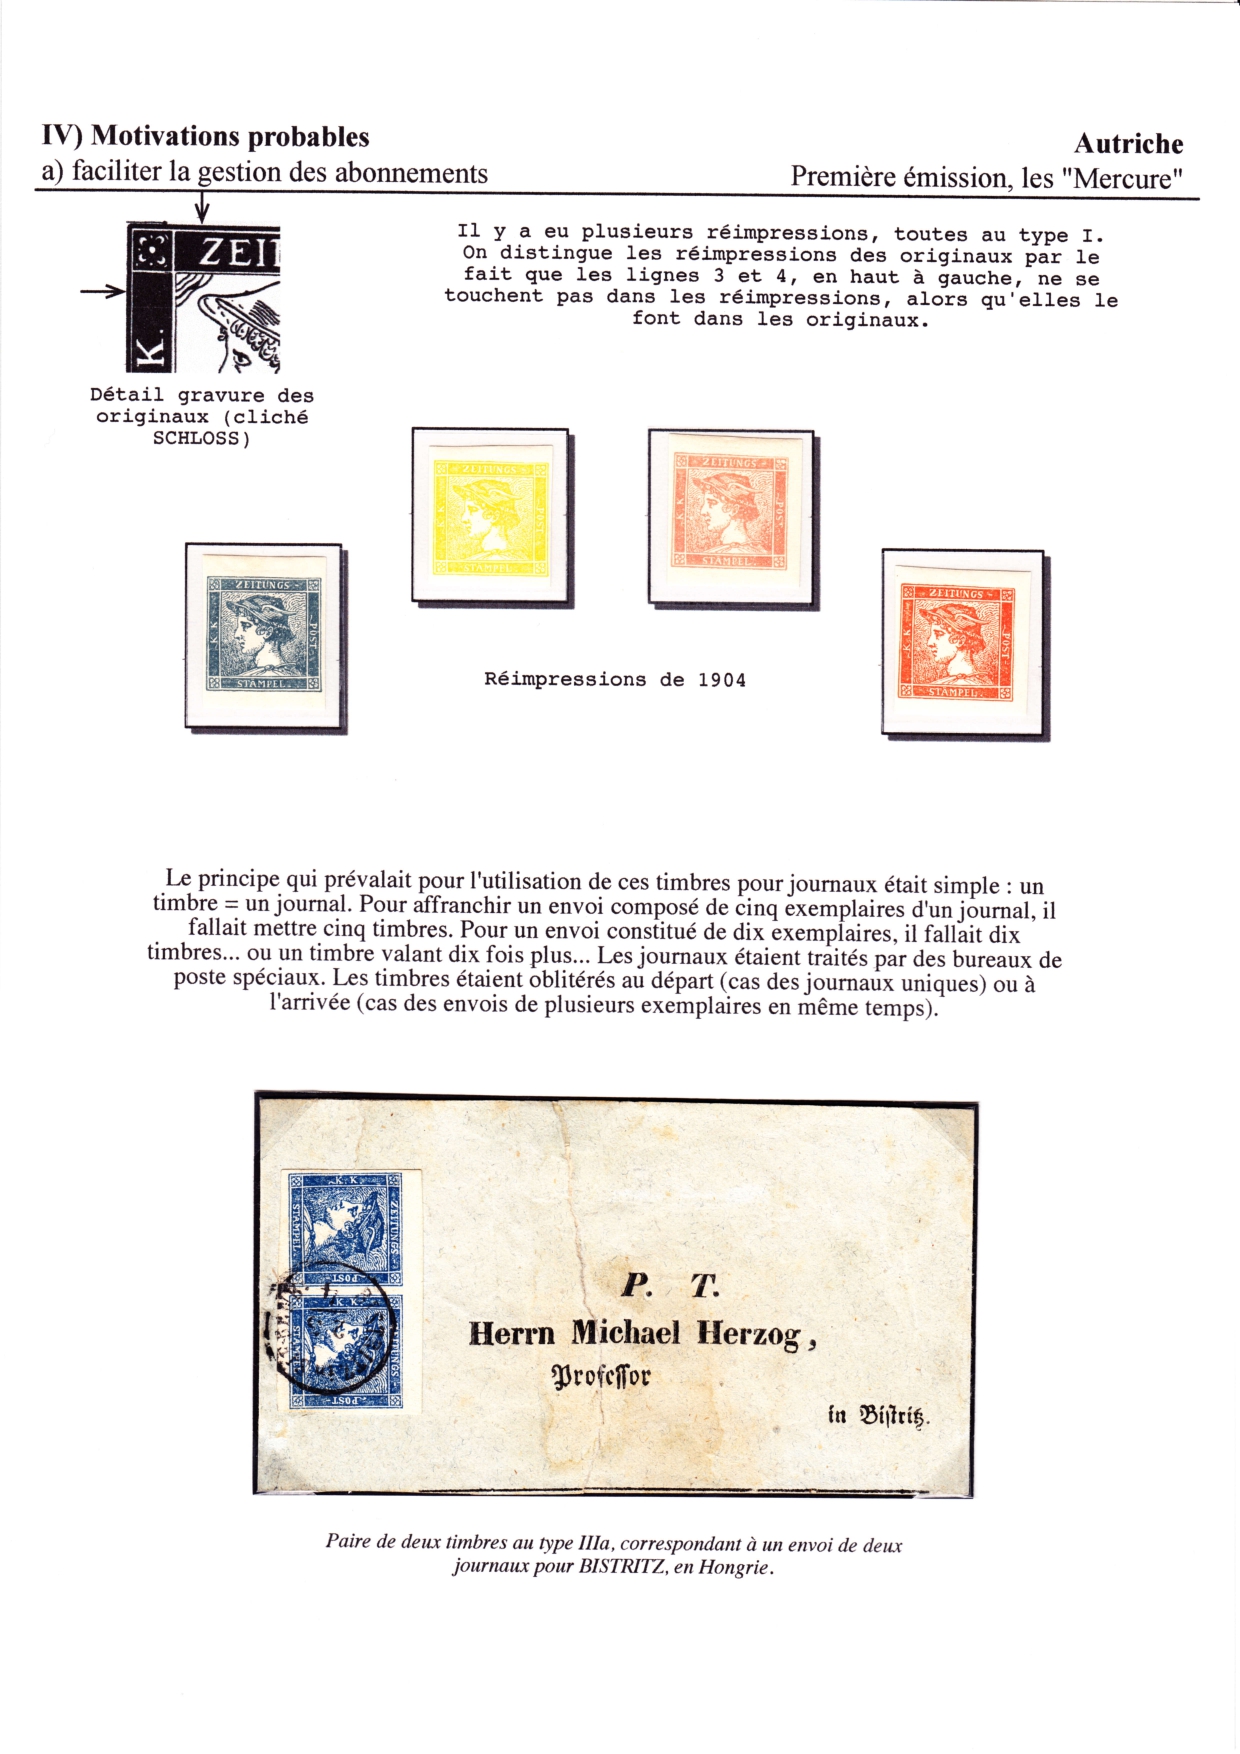 Les d��buts des timbres sans valeur faciale apparente p. 46